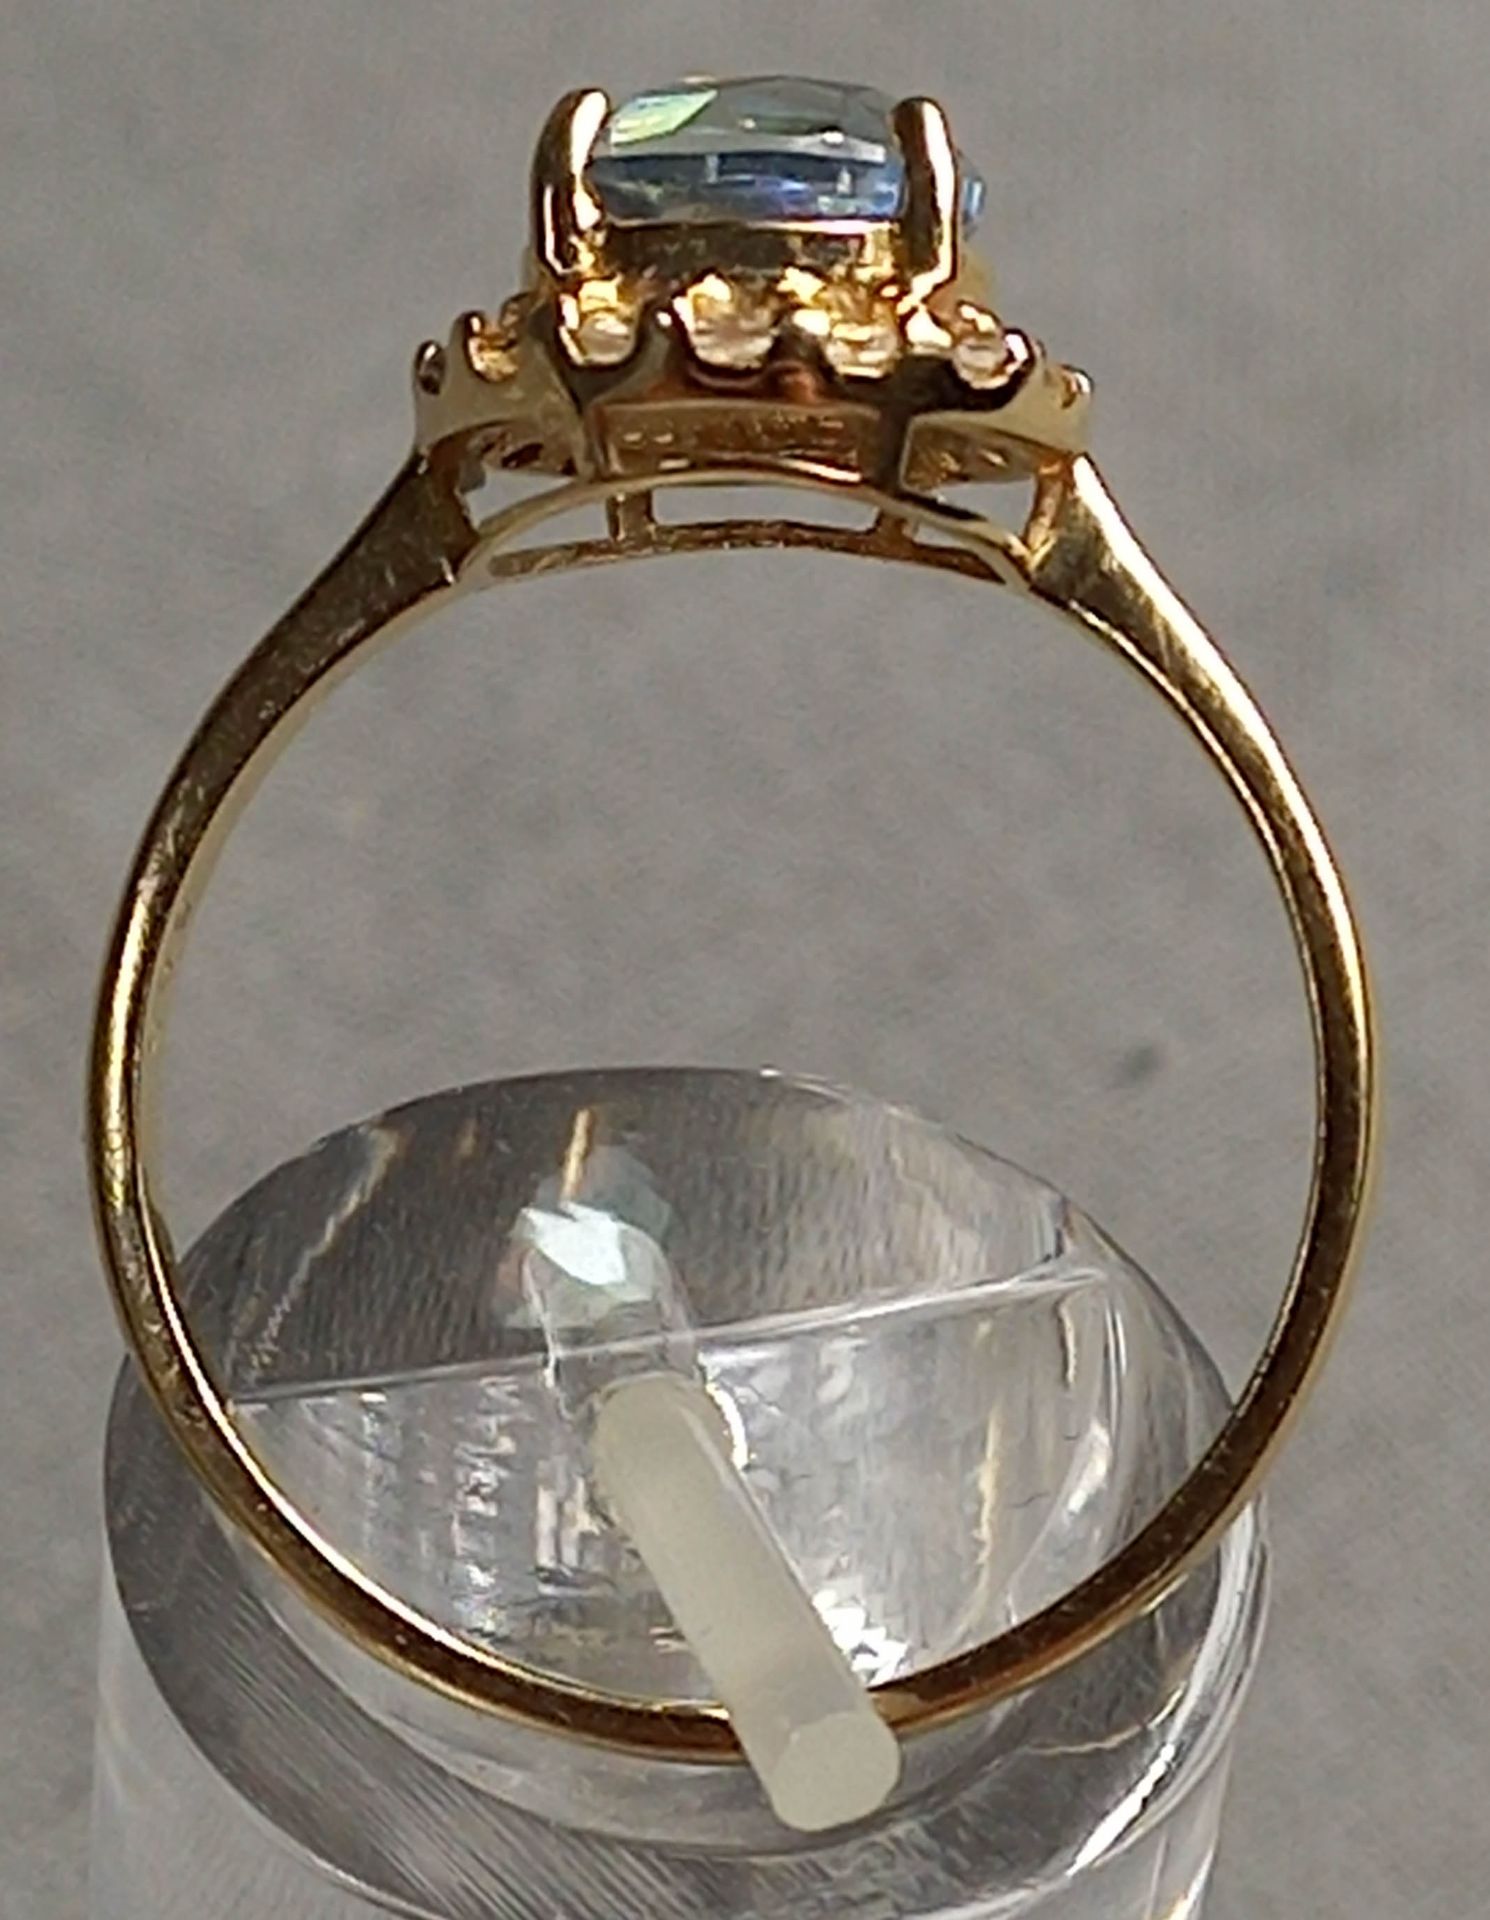 4 Ringe Gold 585 mit Steinen (Aquamarin, Rubin, Diamant, Saphir). - Bild 4 aus 29